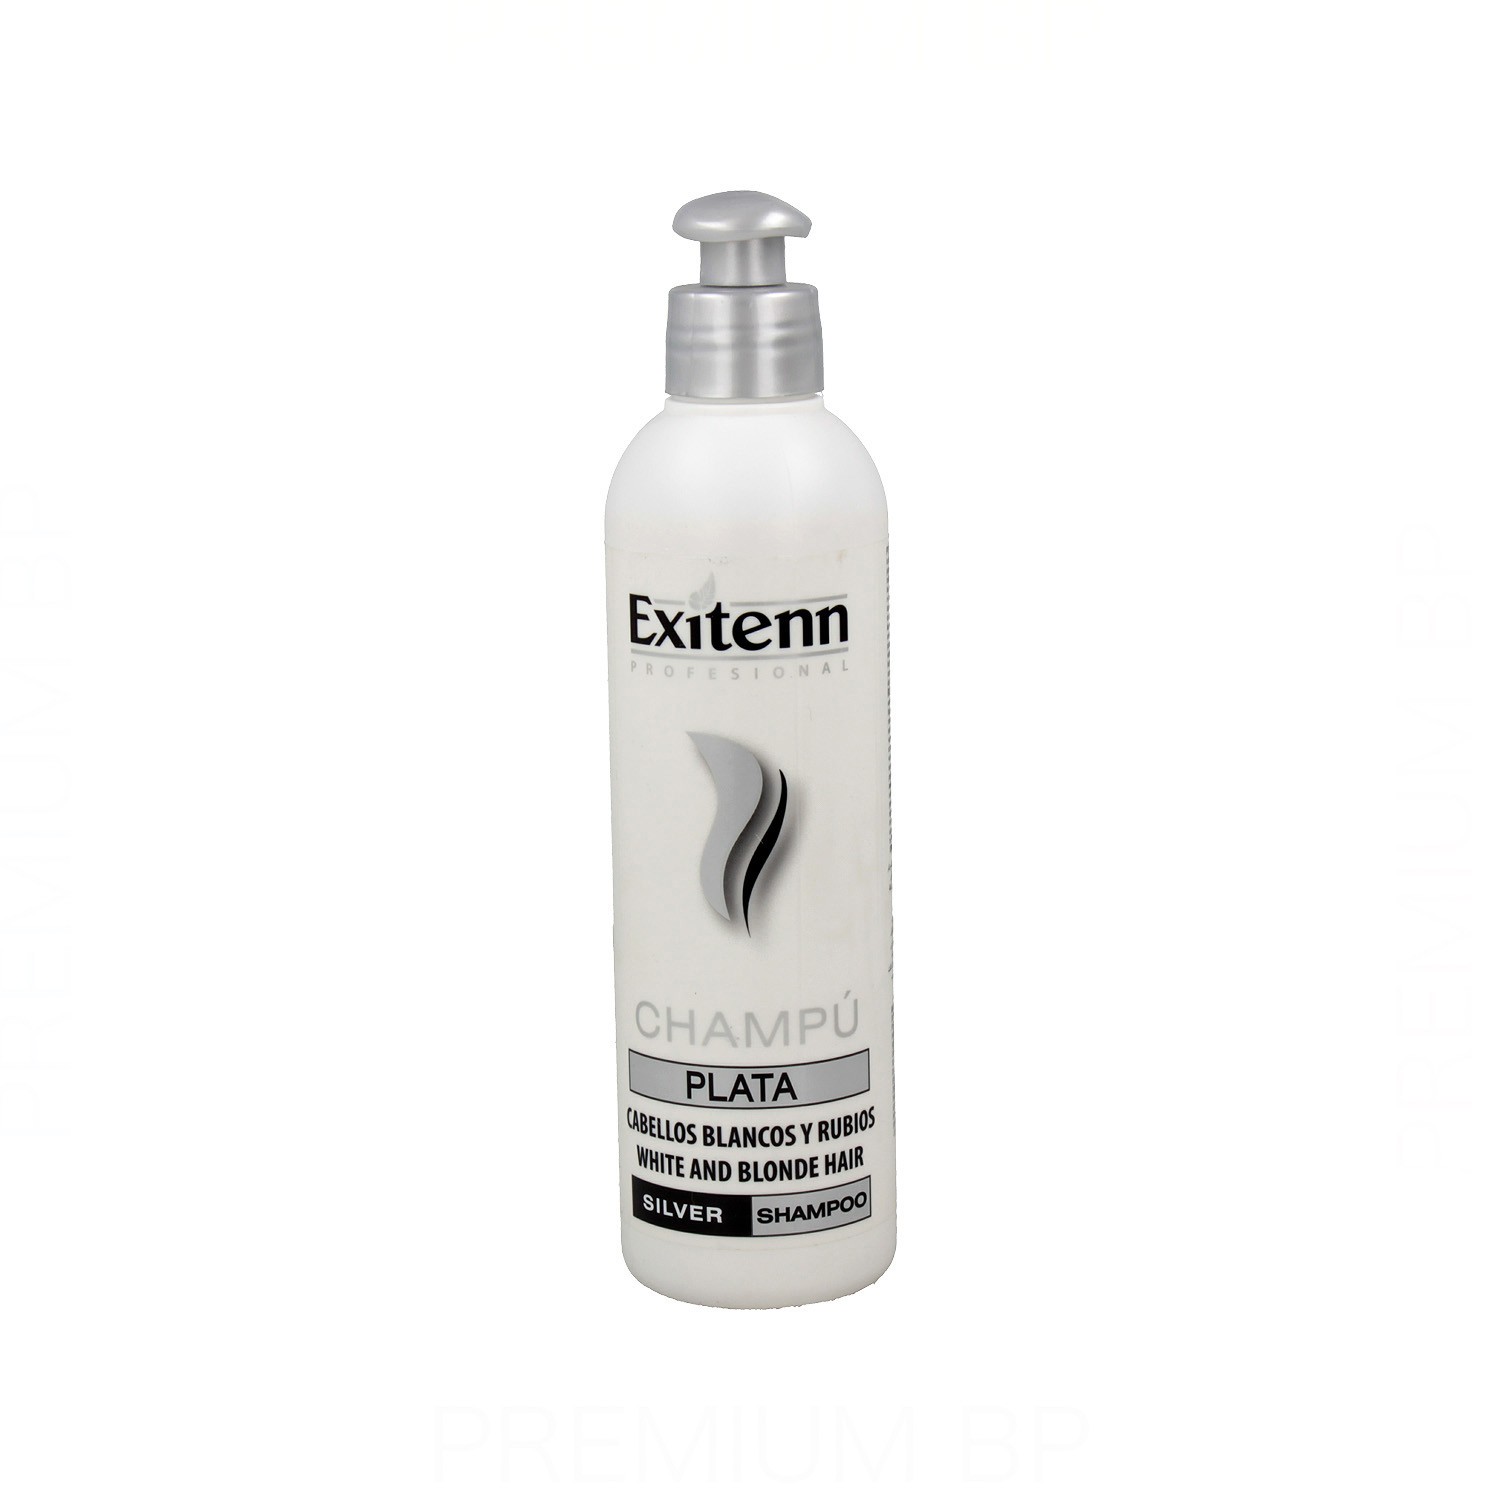 Exitenn - Exitenn plata champú 250 ml, champú para cabellos blancos, plateados y rubios. Belleza y cuidado de tu cabello y tu piel con Exitenn.